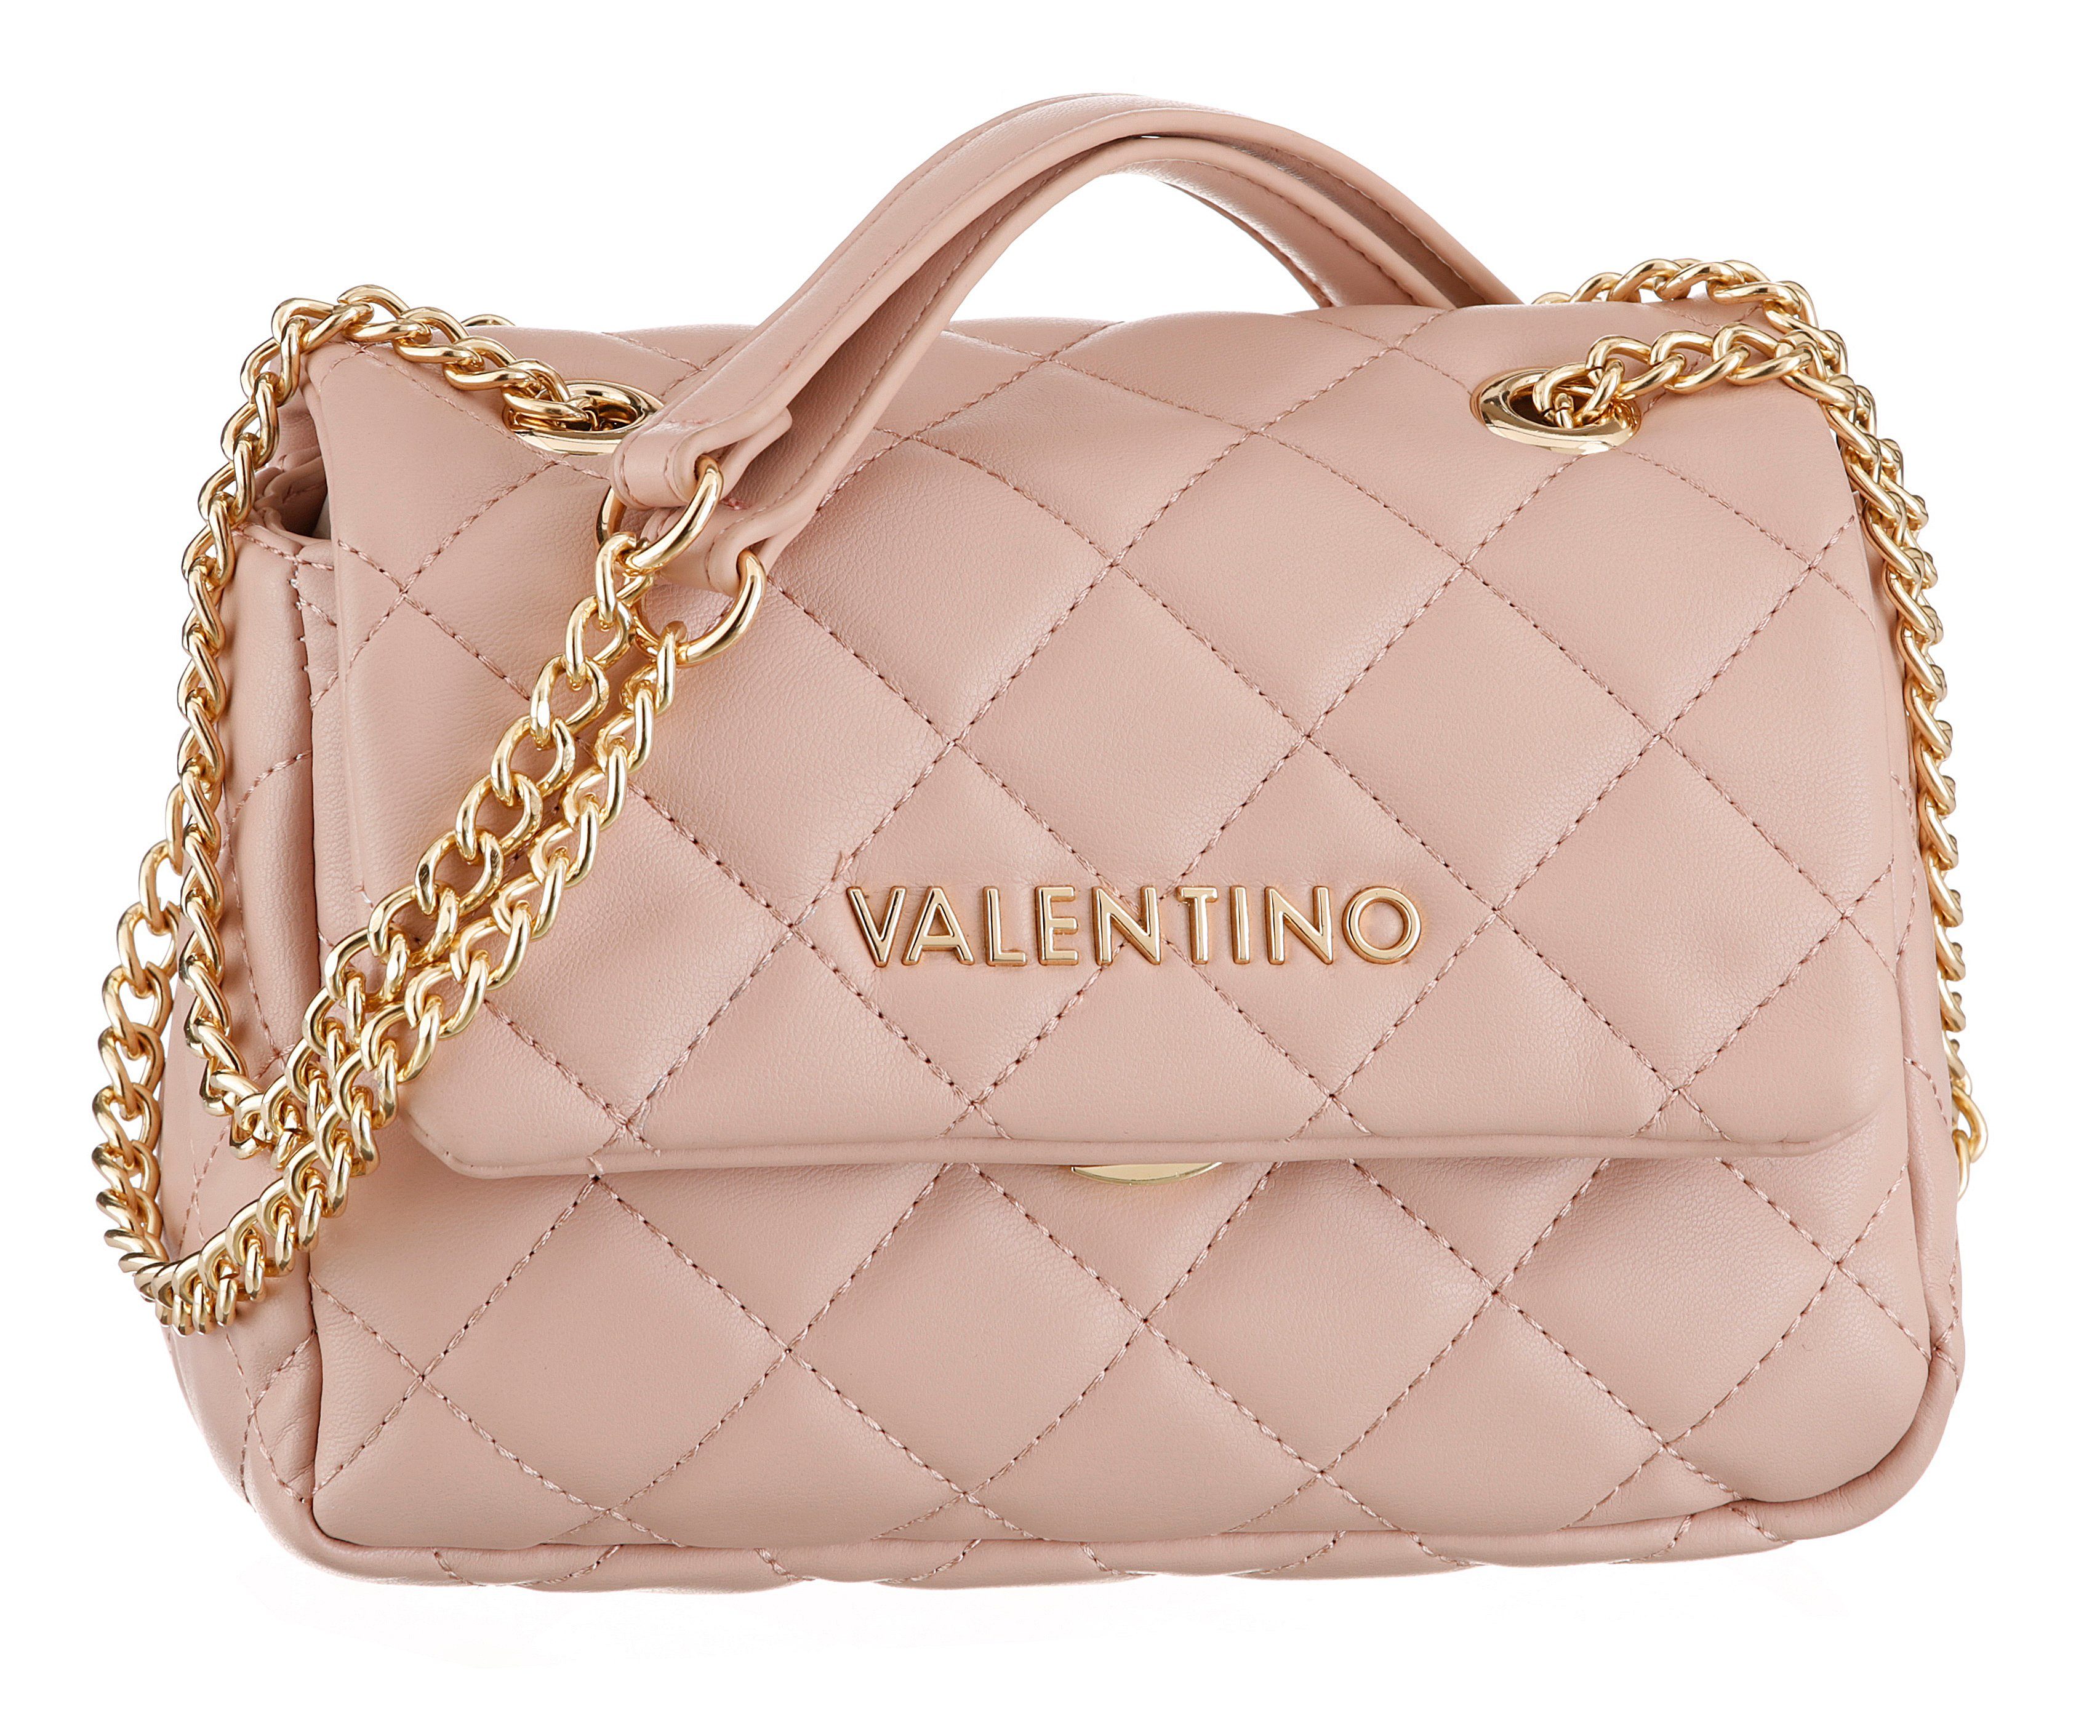 VALENTINO BAGS Umhängetasche OCARINA, goldfarbenen und Ziersteppung rosa Details mit